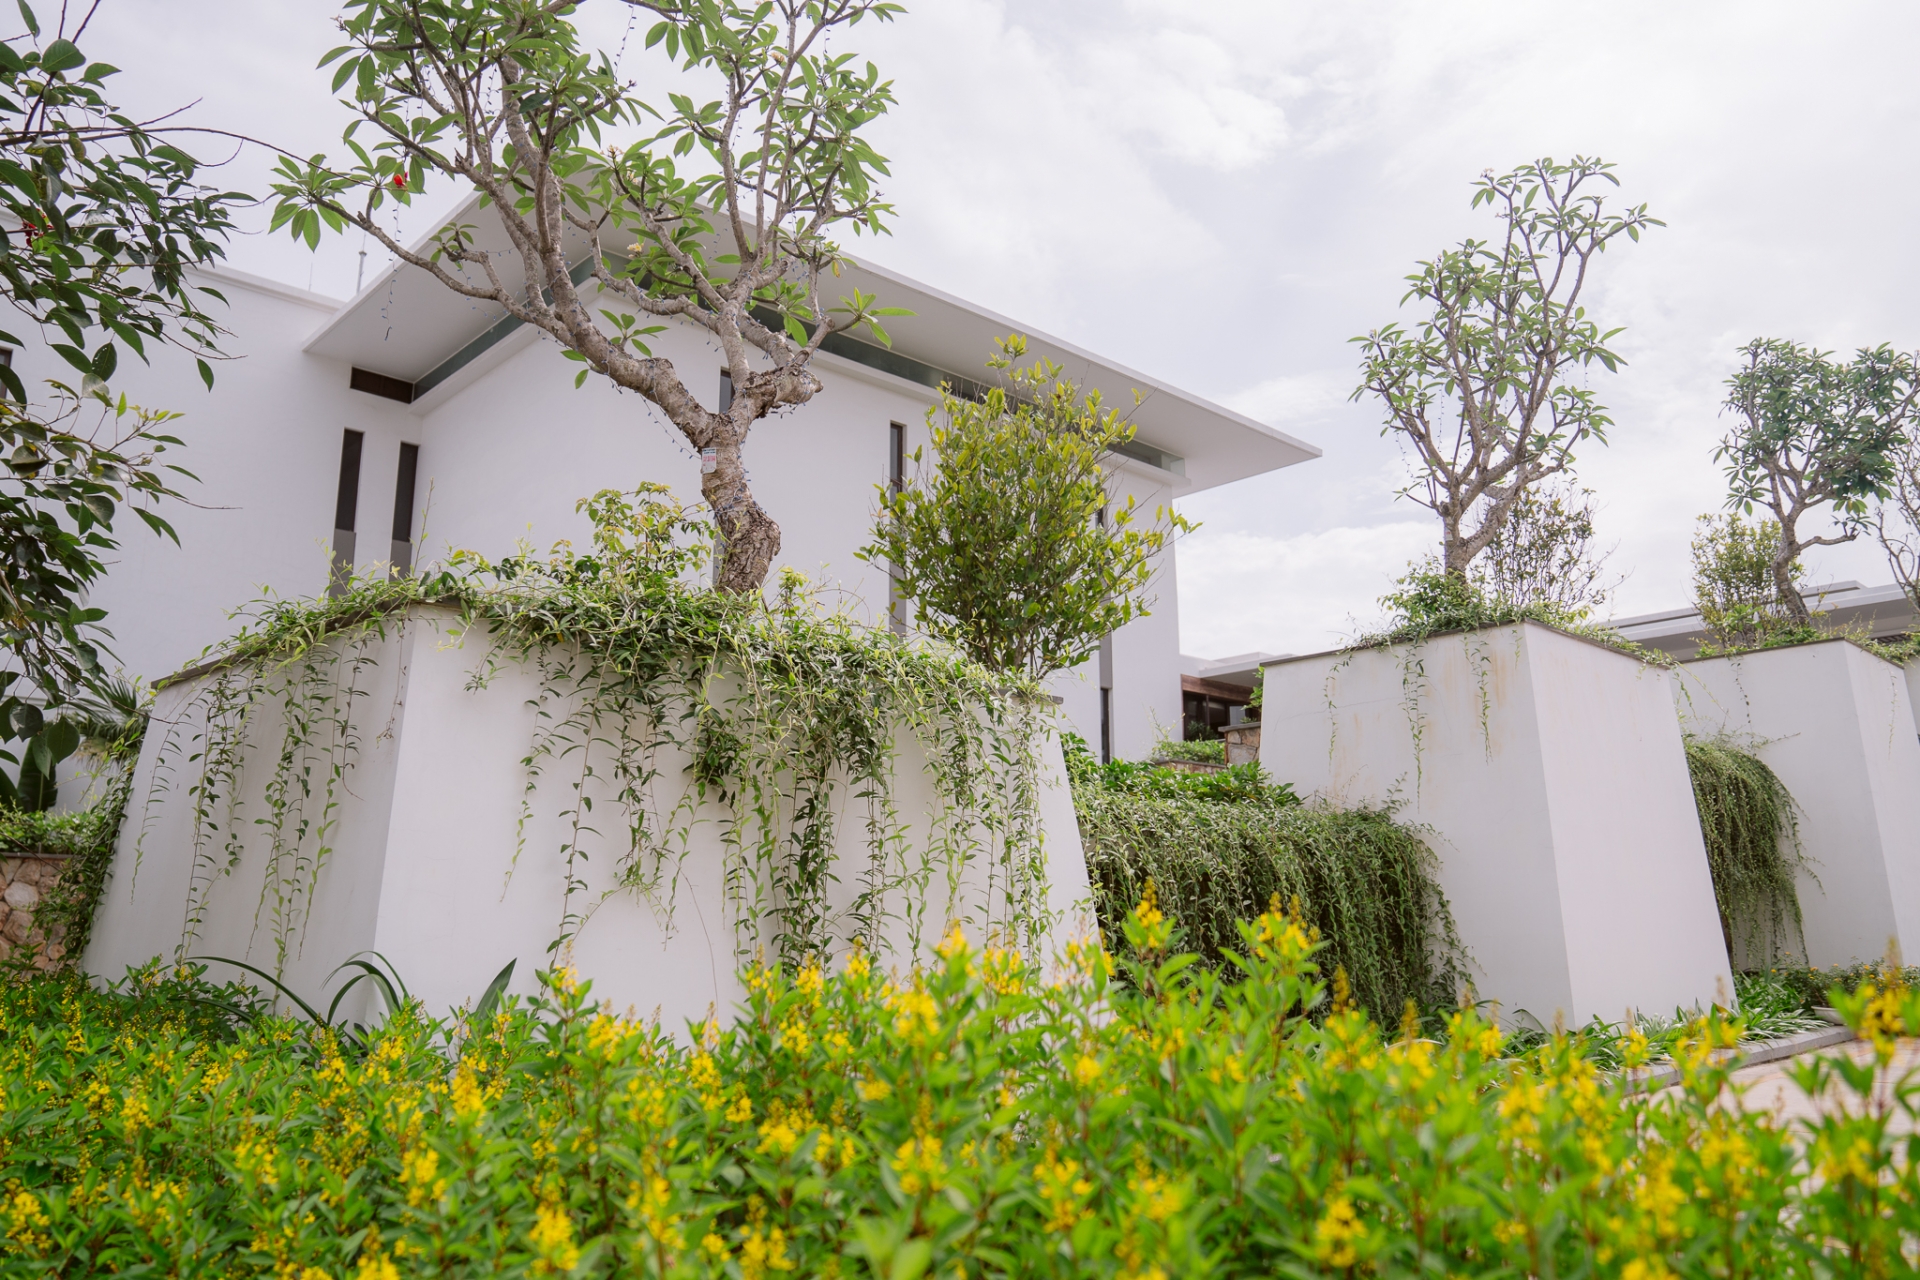 Xu thế “ngôi nhà thứ hai” và sức hấp dẫn của “Khu nghỉ dưỡng dành cho gia đình hàng đầu châu Á”